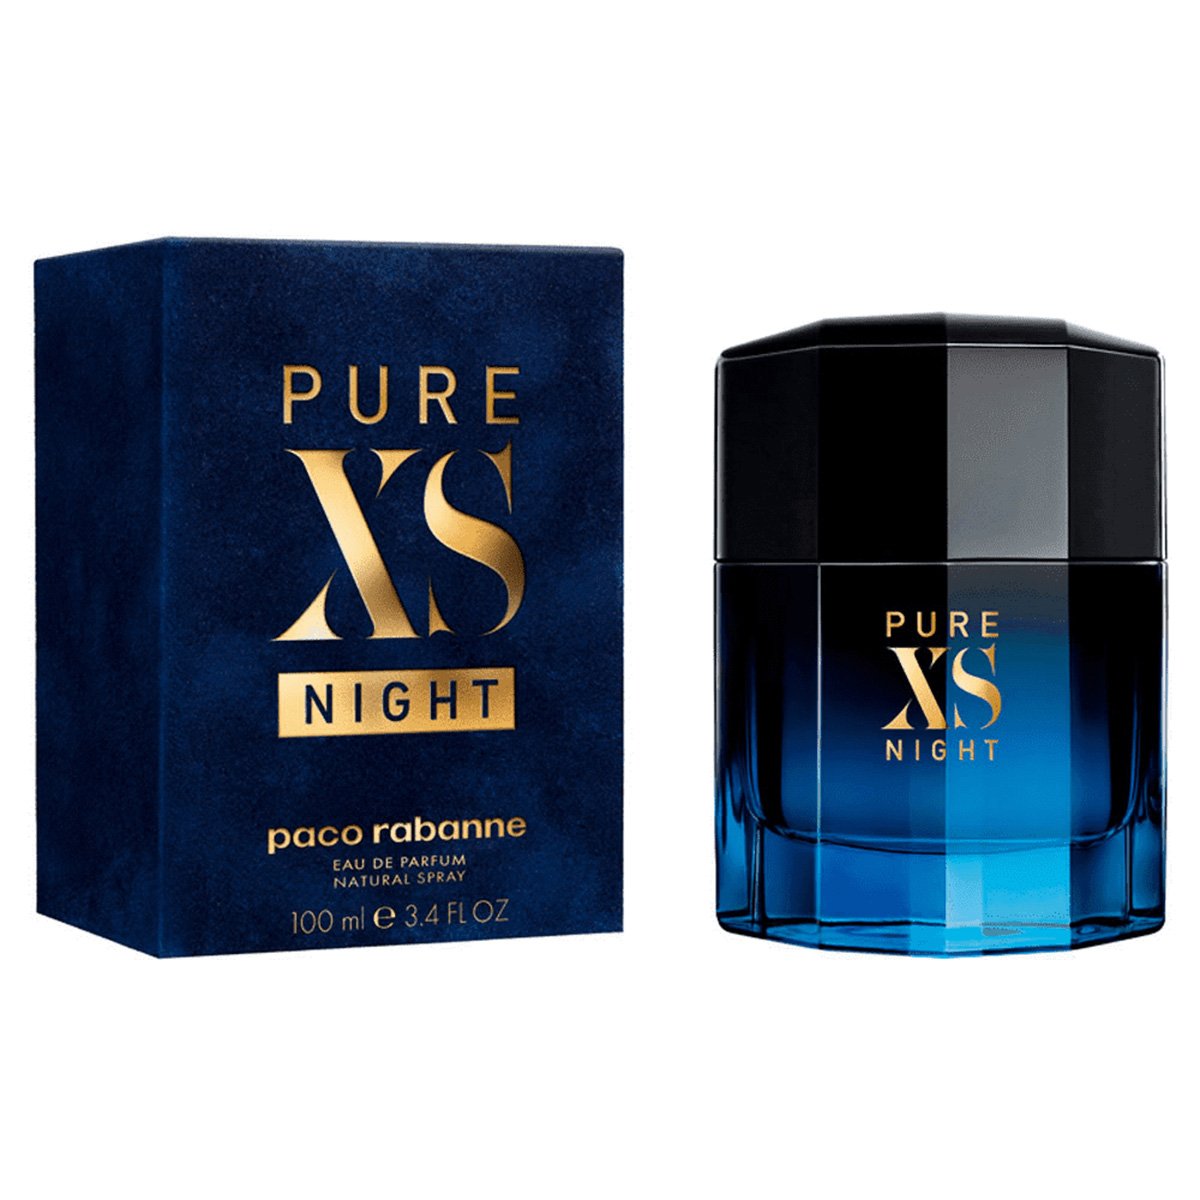 Perfume Paco Rabanne Pure XS Night Masculino - 100ml